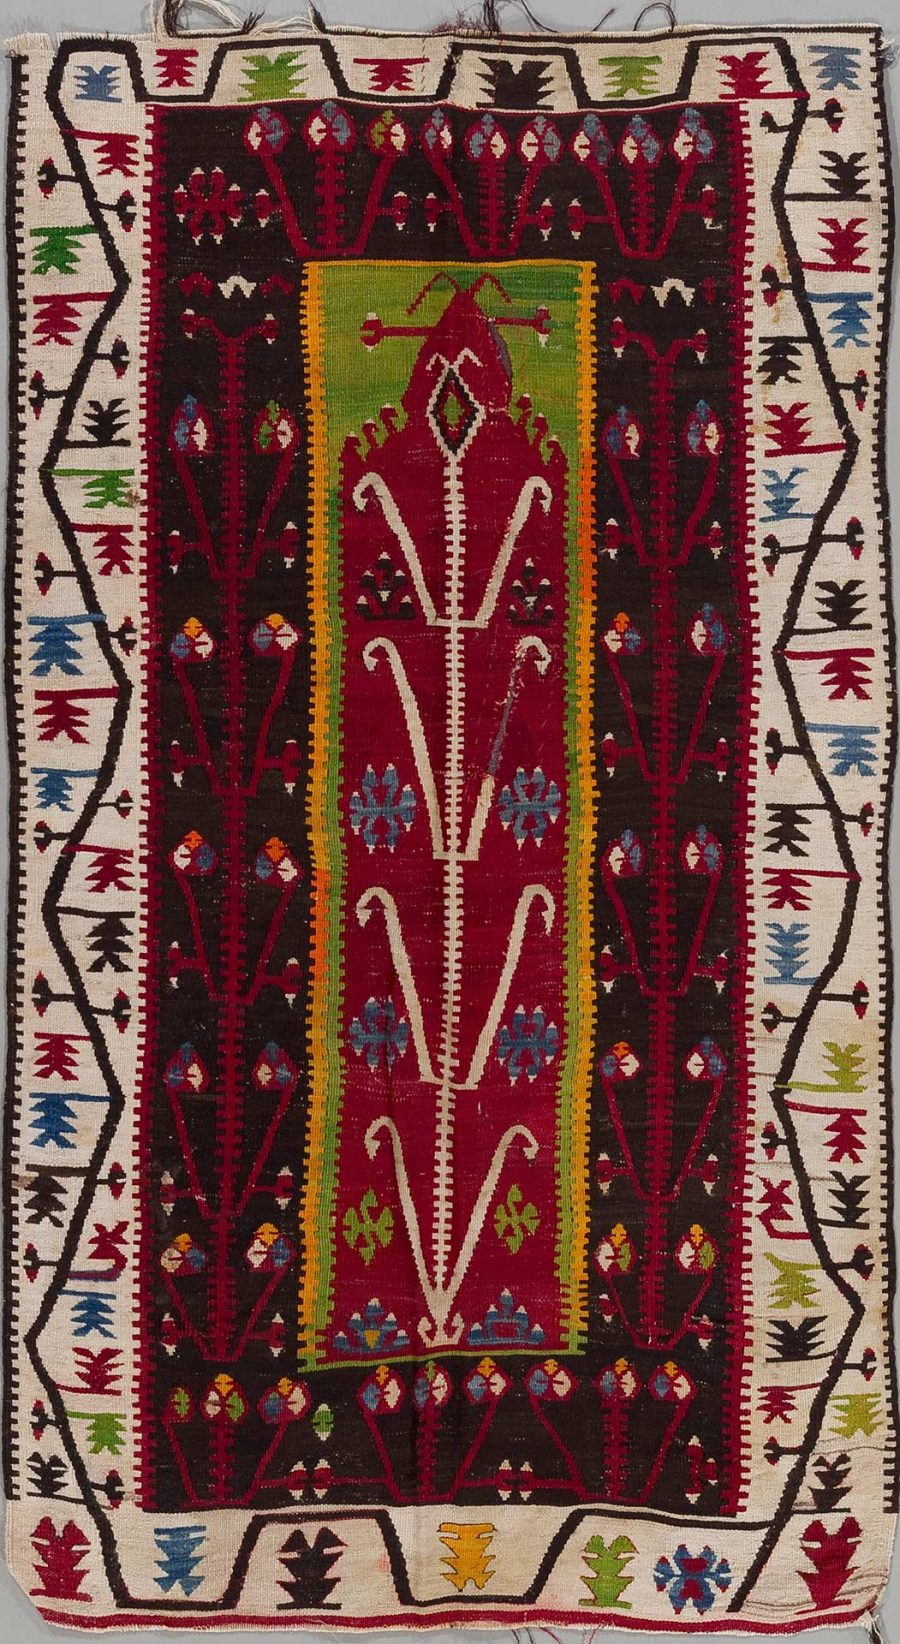 Handgewebter Teppich mit zentralem roten Feld, umgeben von mehrfarbigen geometrischen und floralen Mustern auf dunklem Hintergrund, mit Bordüren in Gelb, Weiß und Schwarz.